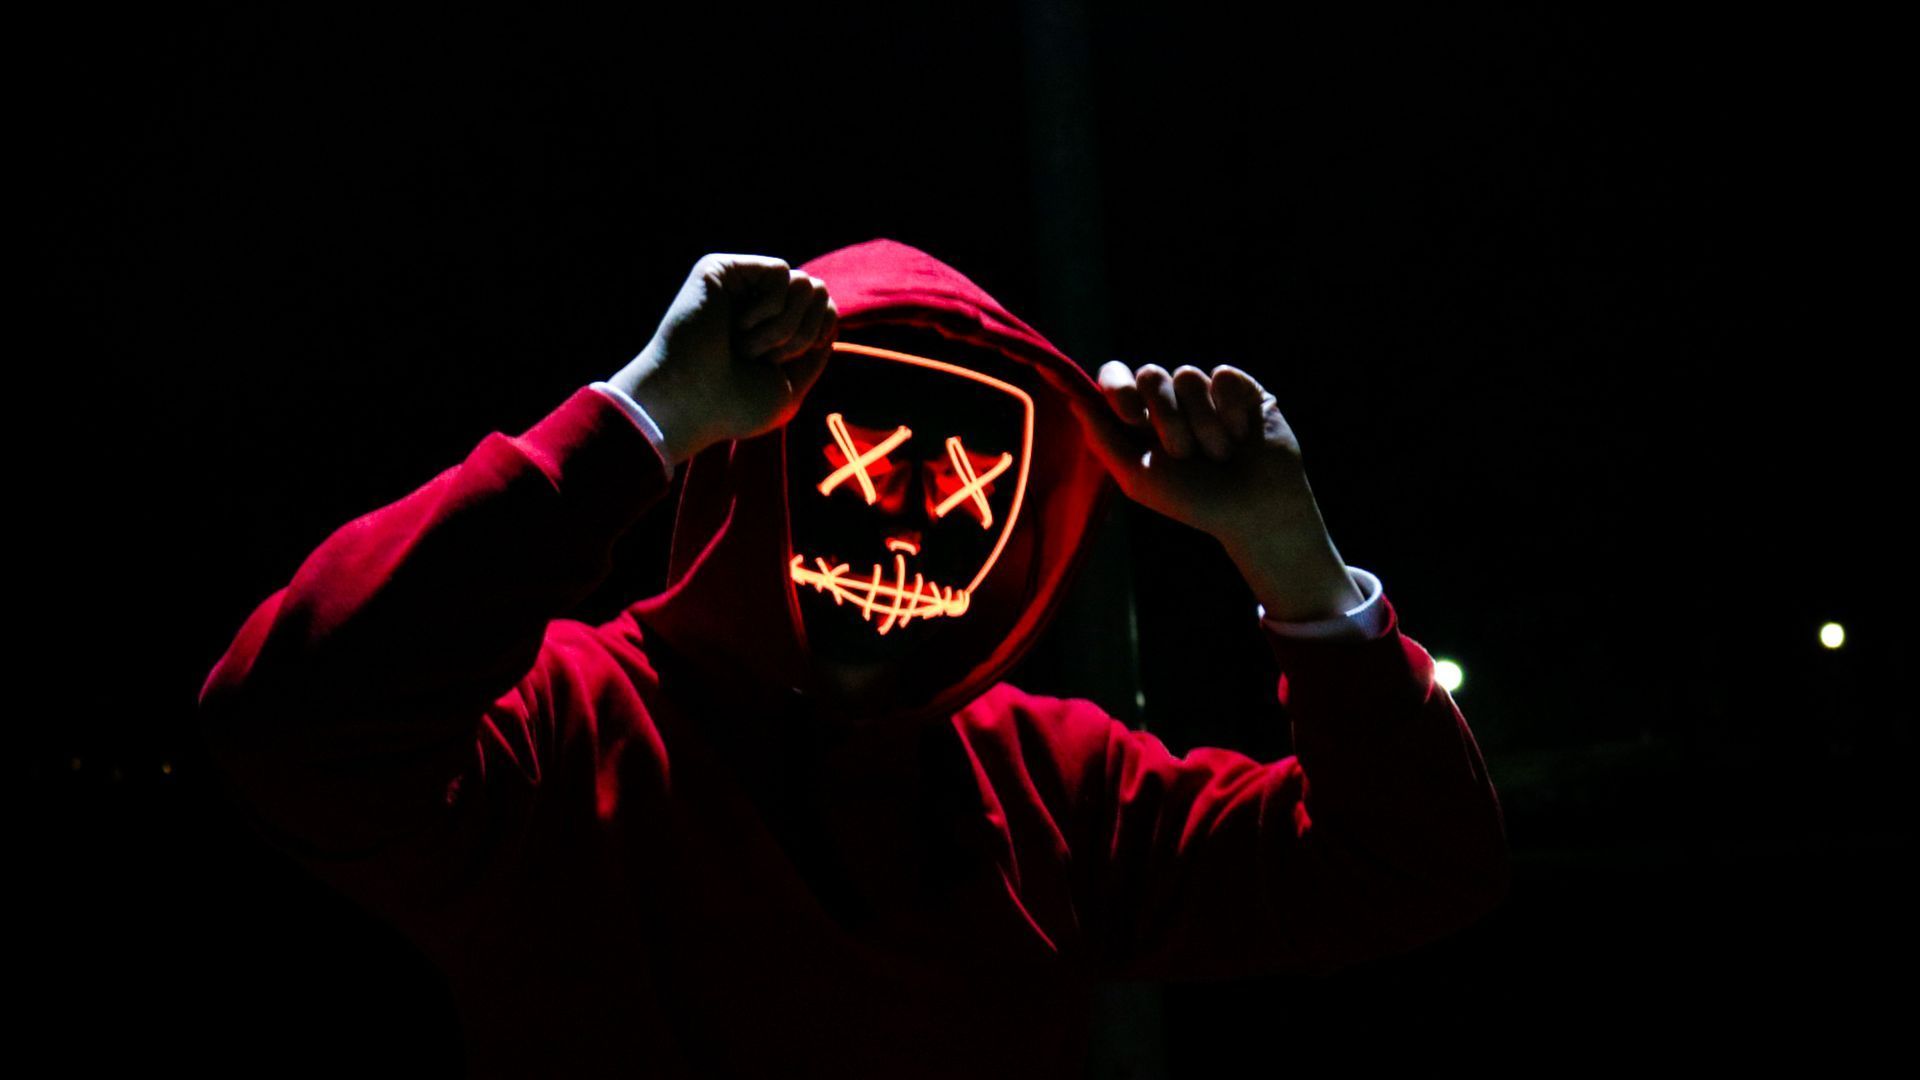 Man Wearing Red Hoodie Scary HD Wallpaper. Black wallpaper, Red hoodie, Free